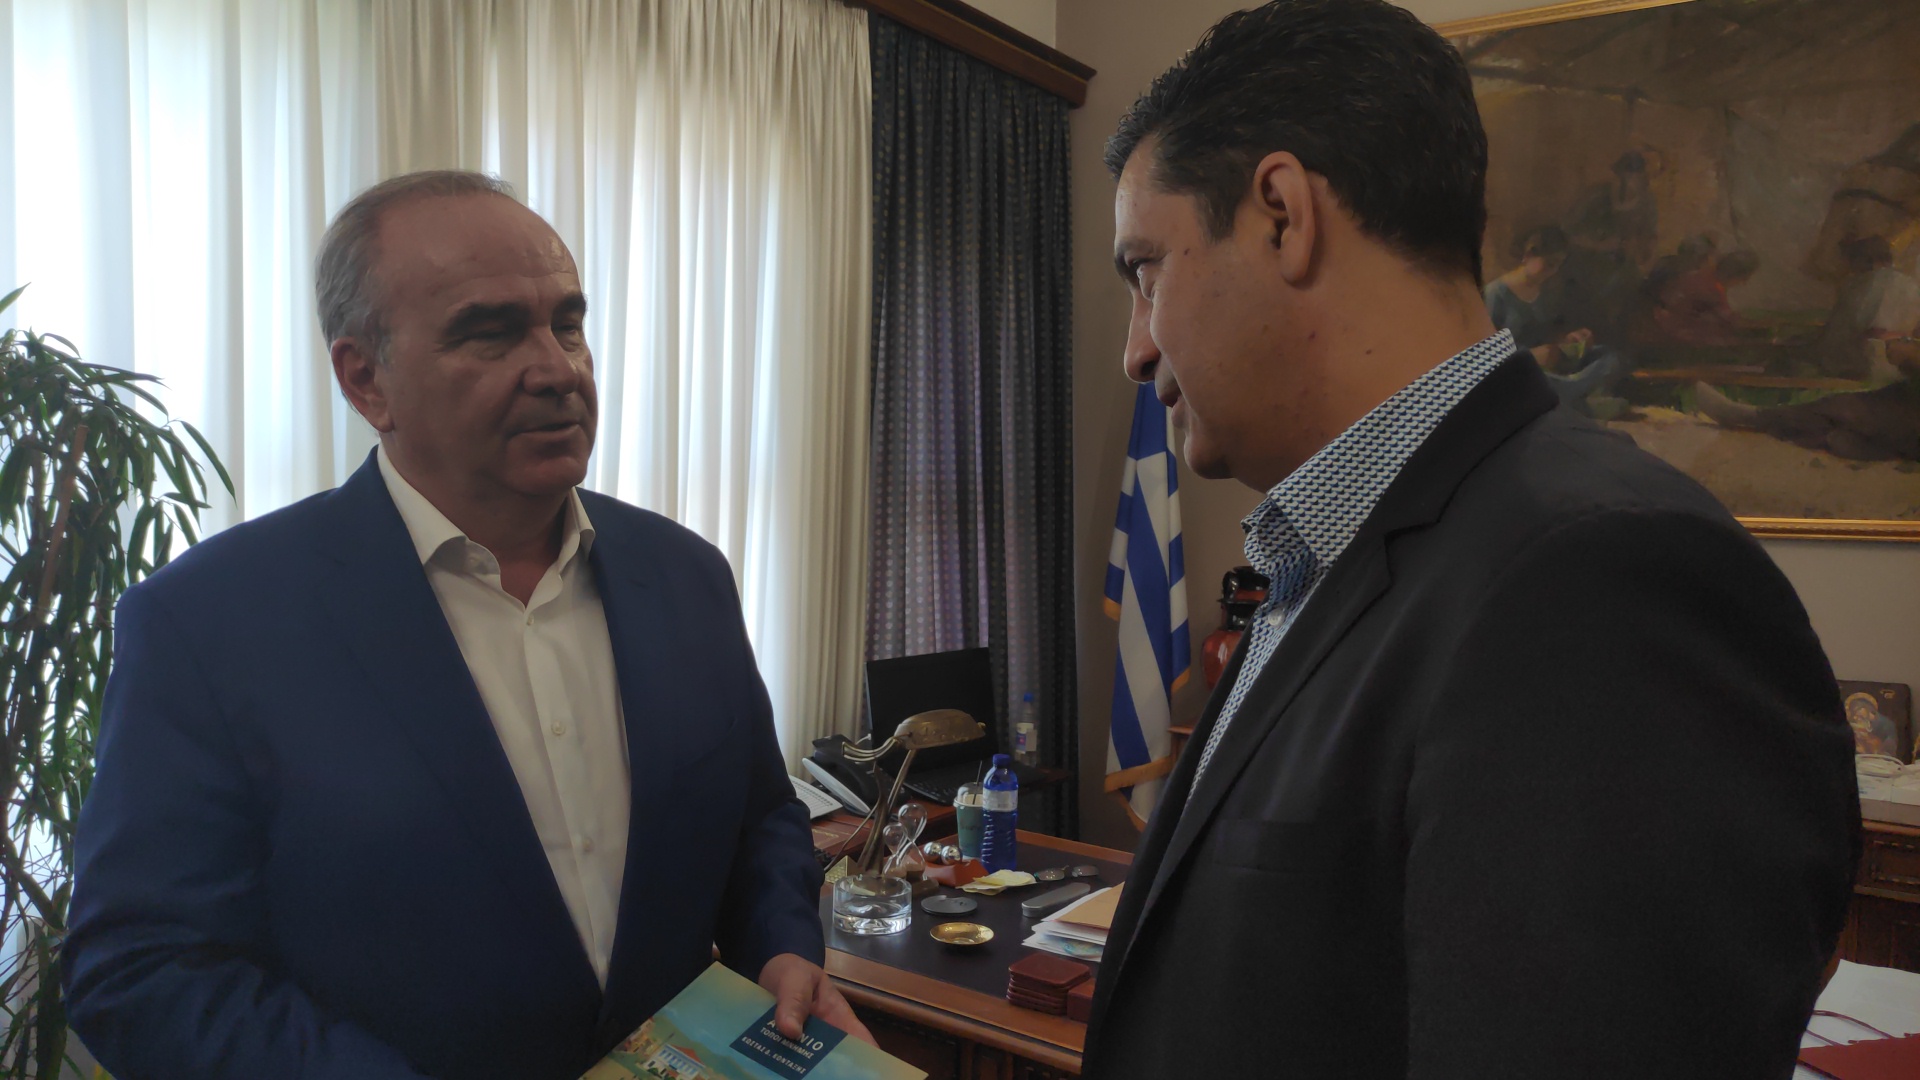 «Τα άκουσε» ο Παπαθανάσης από τον δήμαρχο Αγρινίου: «Θα έχει μεγαλύτερο πρόβλημα η κυβέρνηση αν δεν γίνει η διχοτόμηση της Μητρόπολης» (βίντεο)